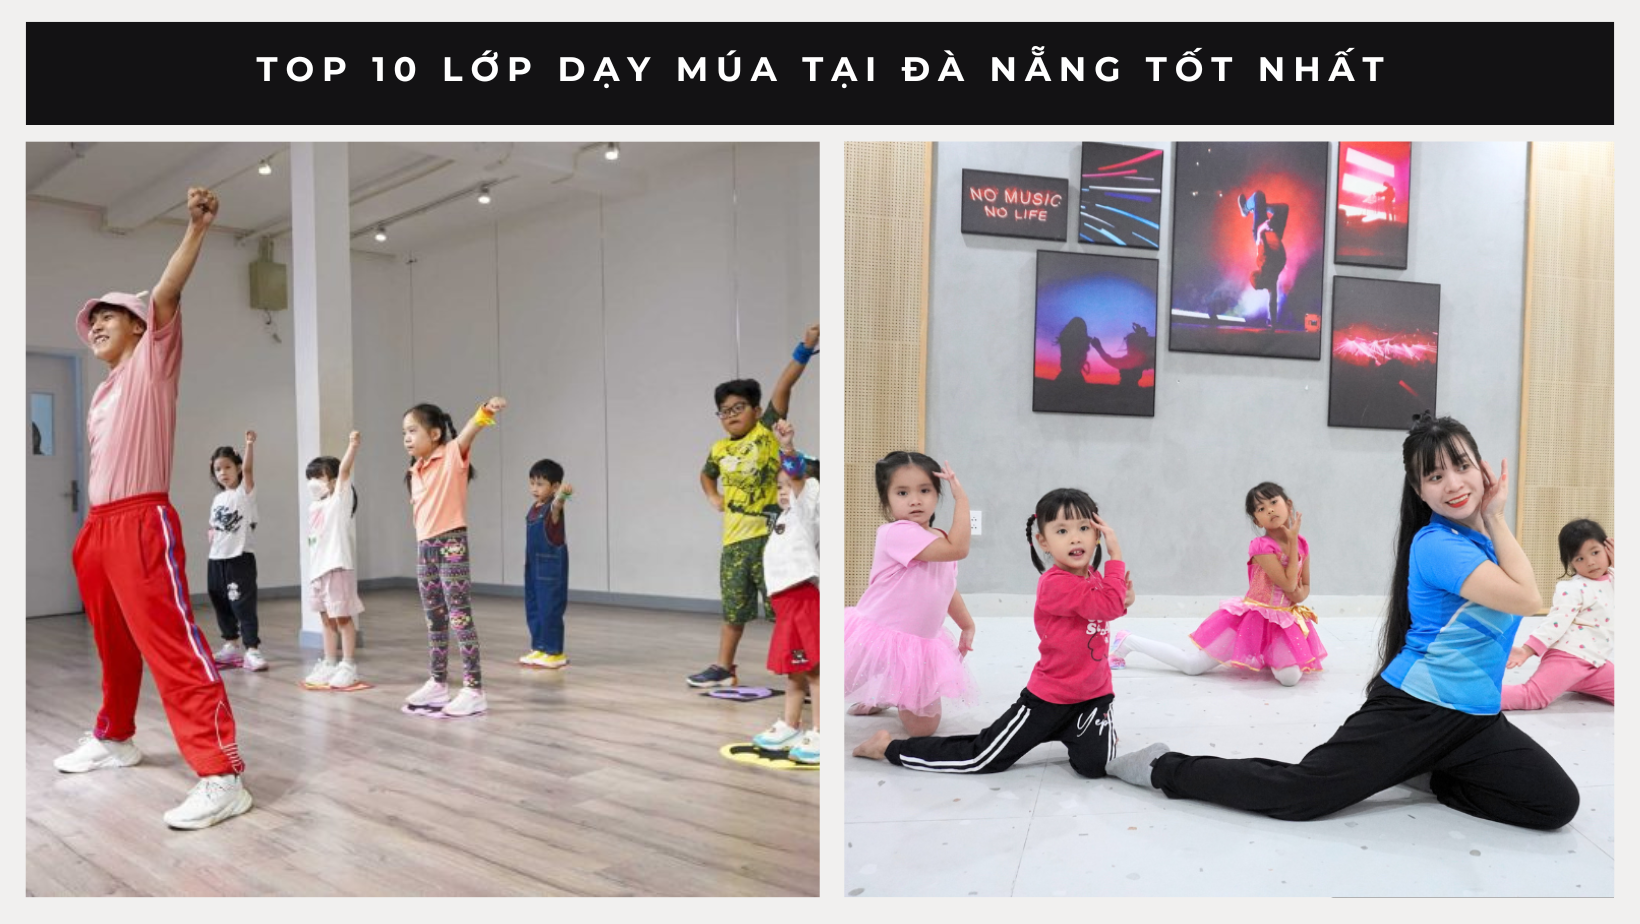 Top 10 lớp dạy múa tại Đà Nẵng tốt nhất